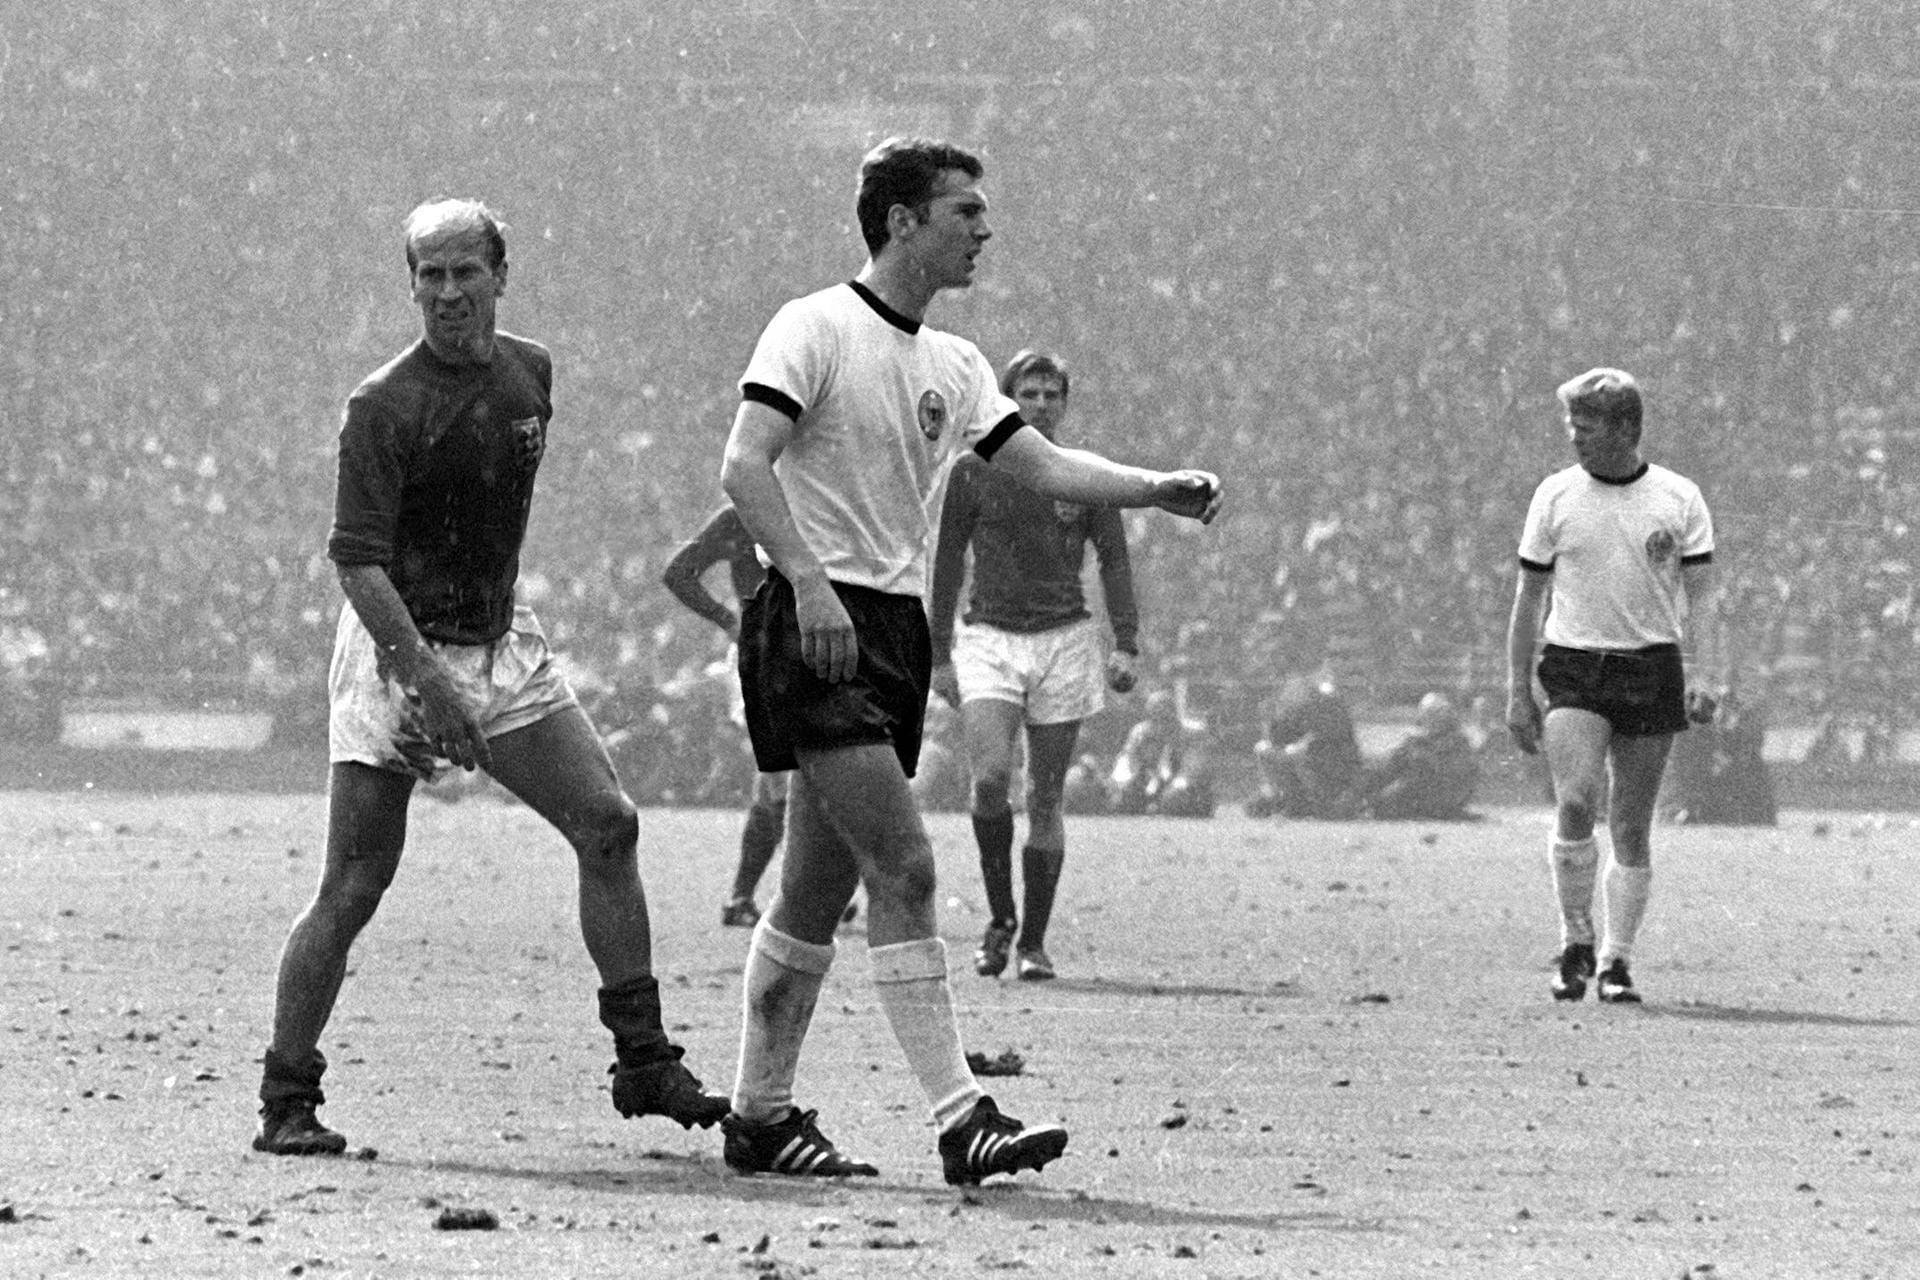 Bei der WM 1966 in England geht Beckenbauers Stern auf. Als defensiver Mittelfeldspieler erzielt er insgesamt vier Tore und belegt den dritten Platz in der Torschützenliste. Im Endspiel gegen England ist er der Sonderbewacher des damaligen Superstars Bobby Charlton (l.). Hinterher stellt sich heraus, dass Charlton wiederum den Auftrag hatte, Beckenbauer zu bewachen. Beide neutralisieren sich.